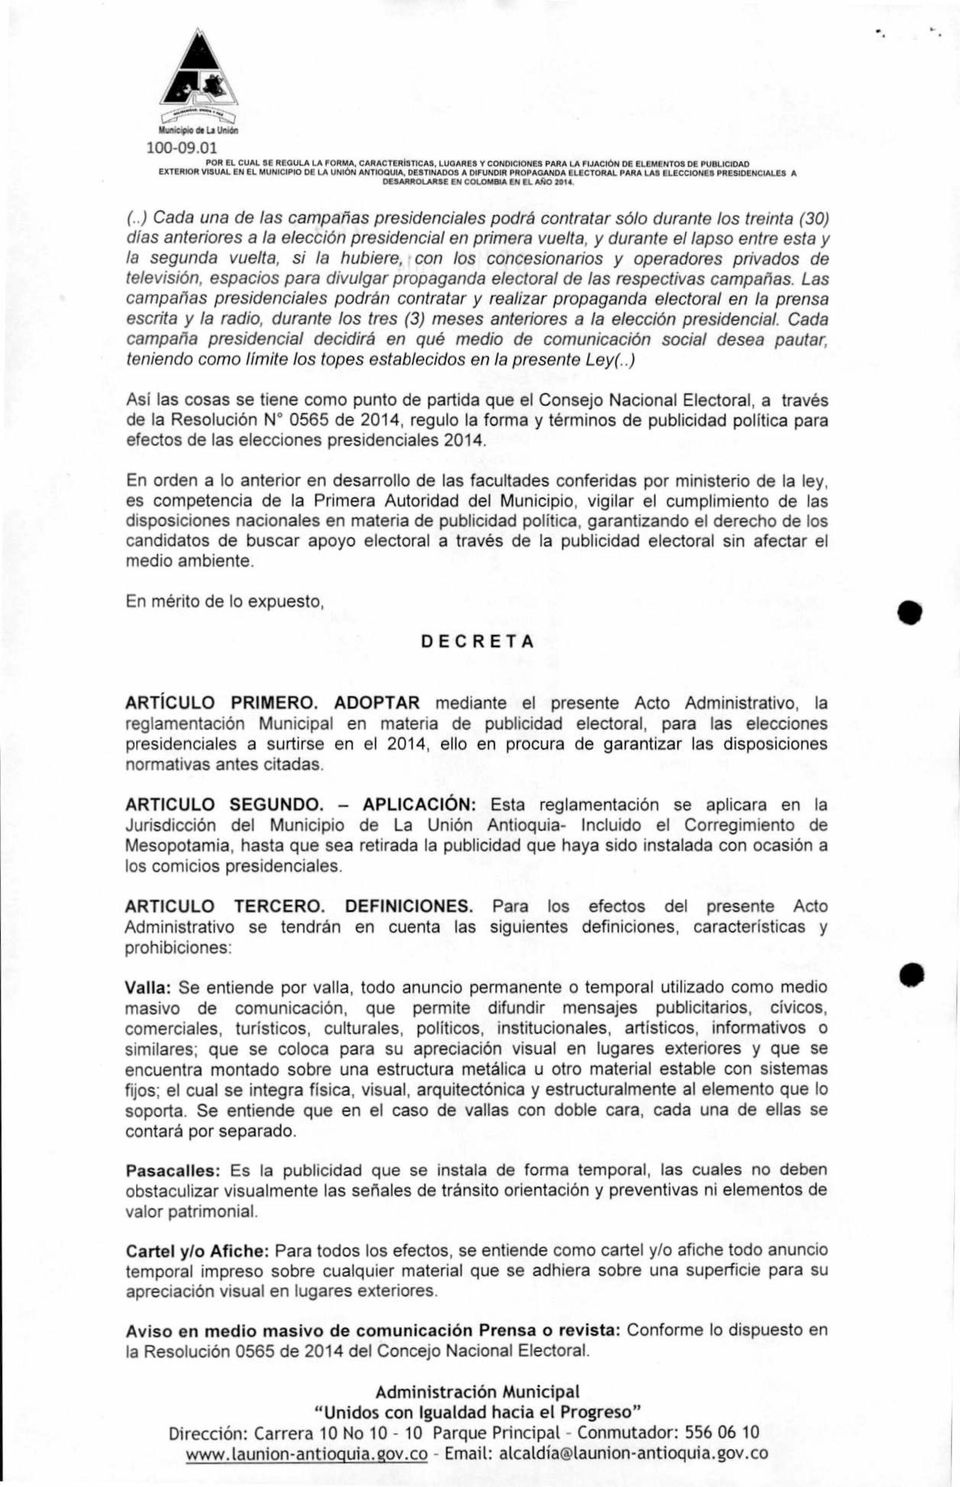 ELECCIONES PRESIDENCIALES A DESARROLARSE EN COLOMBIA EN El AÑO 2014 (.